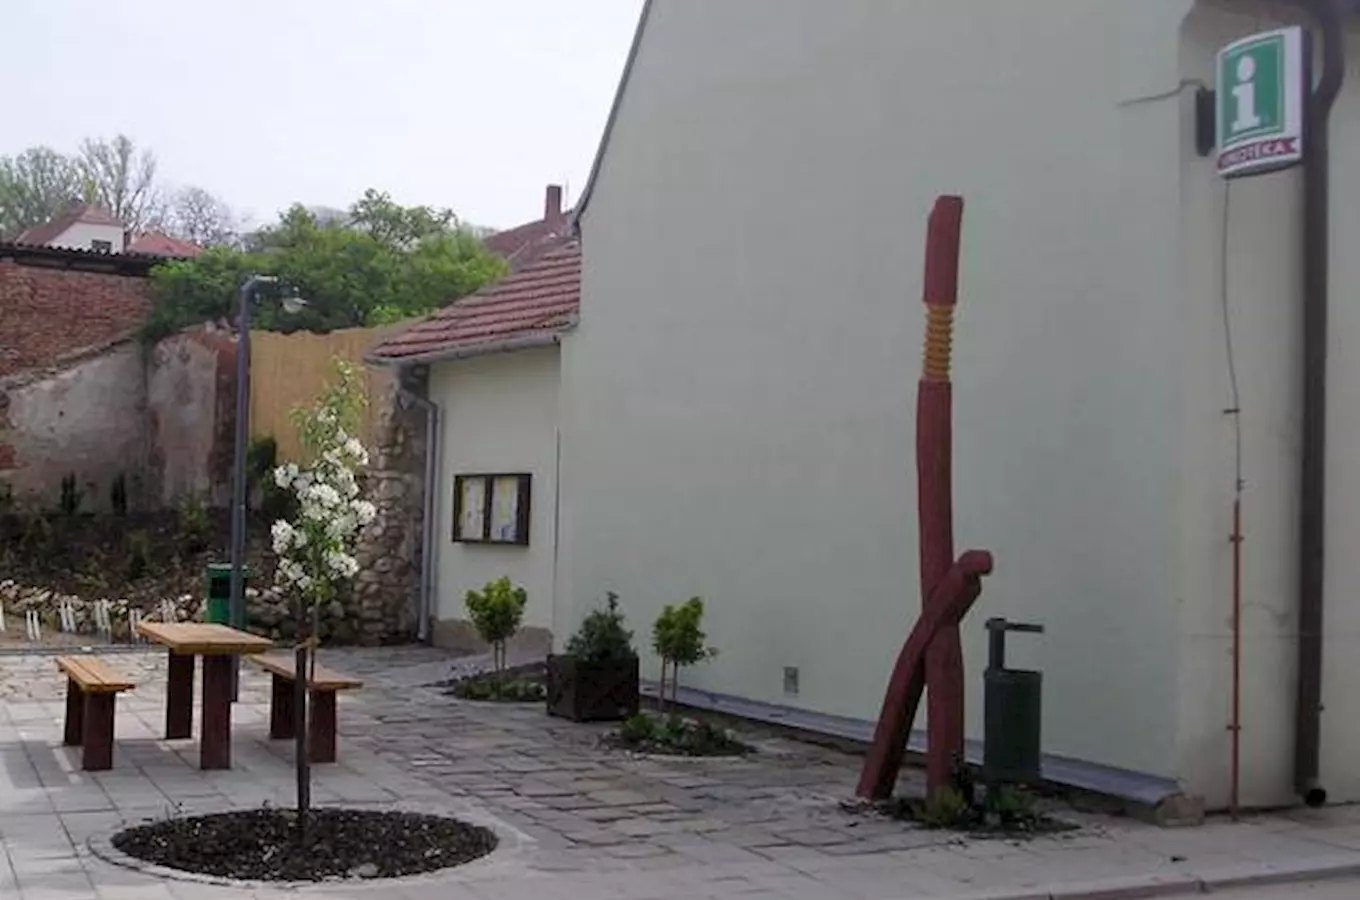 Regionální turistické informační centrum Židlochovice